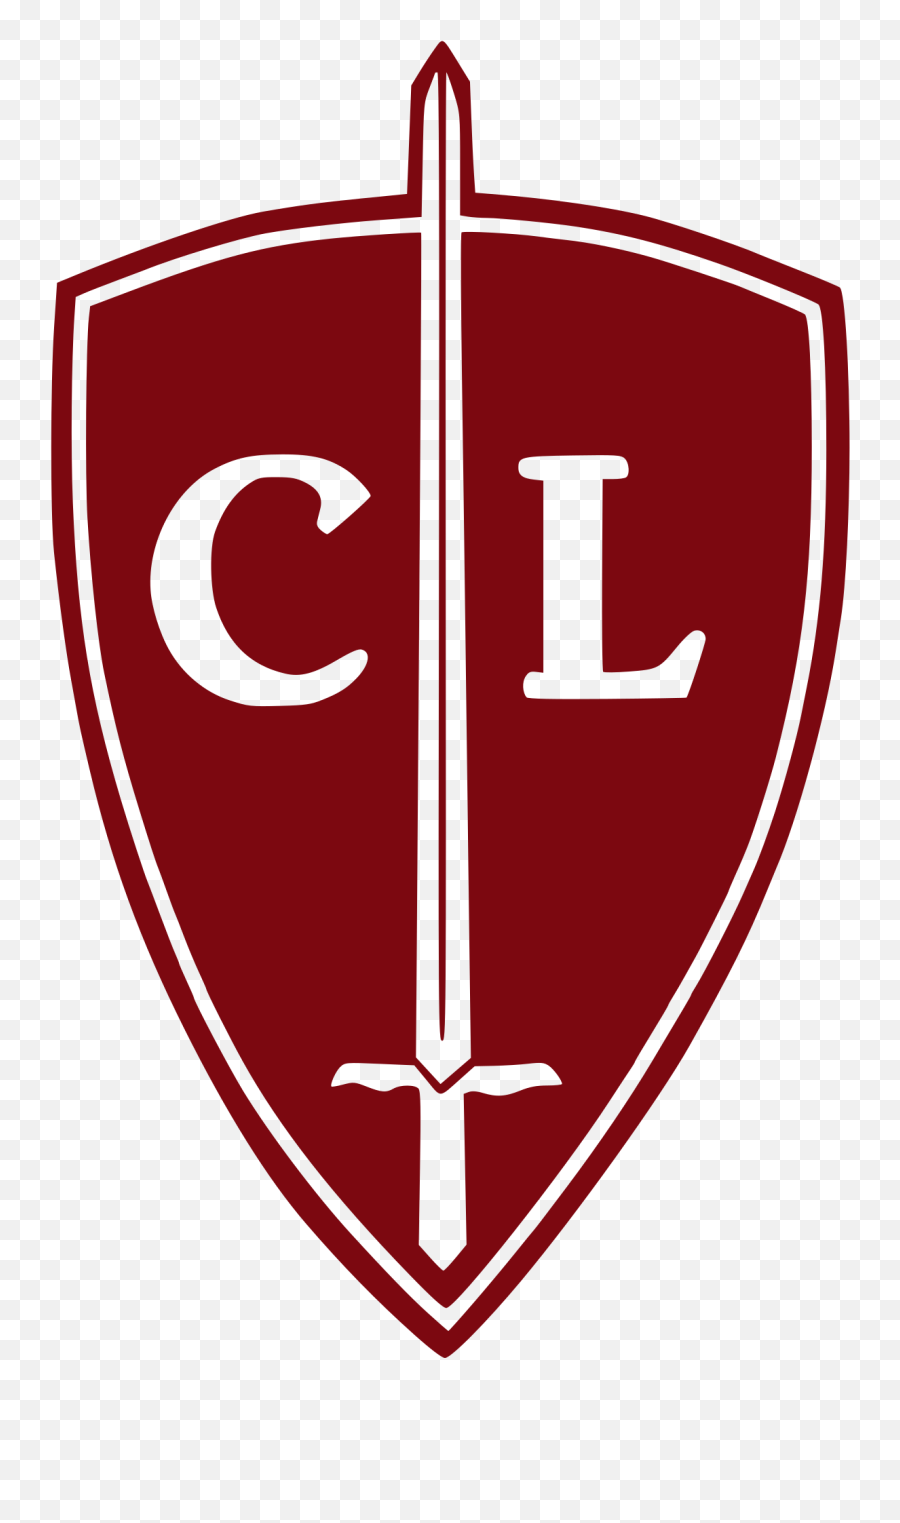 Catholic League Us - Wikipedia Catholic League Png,Fantasy Grounds Icon